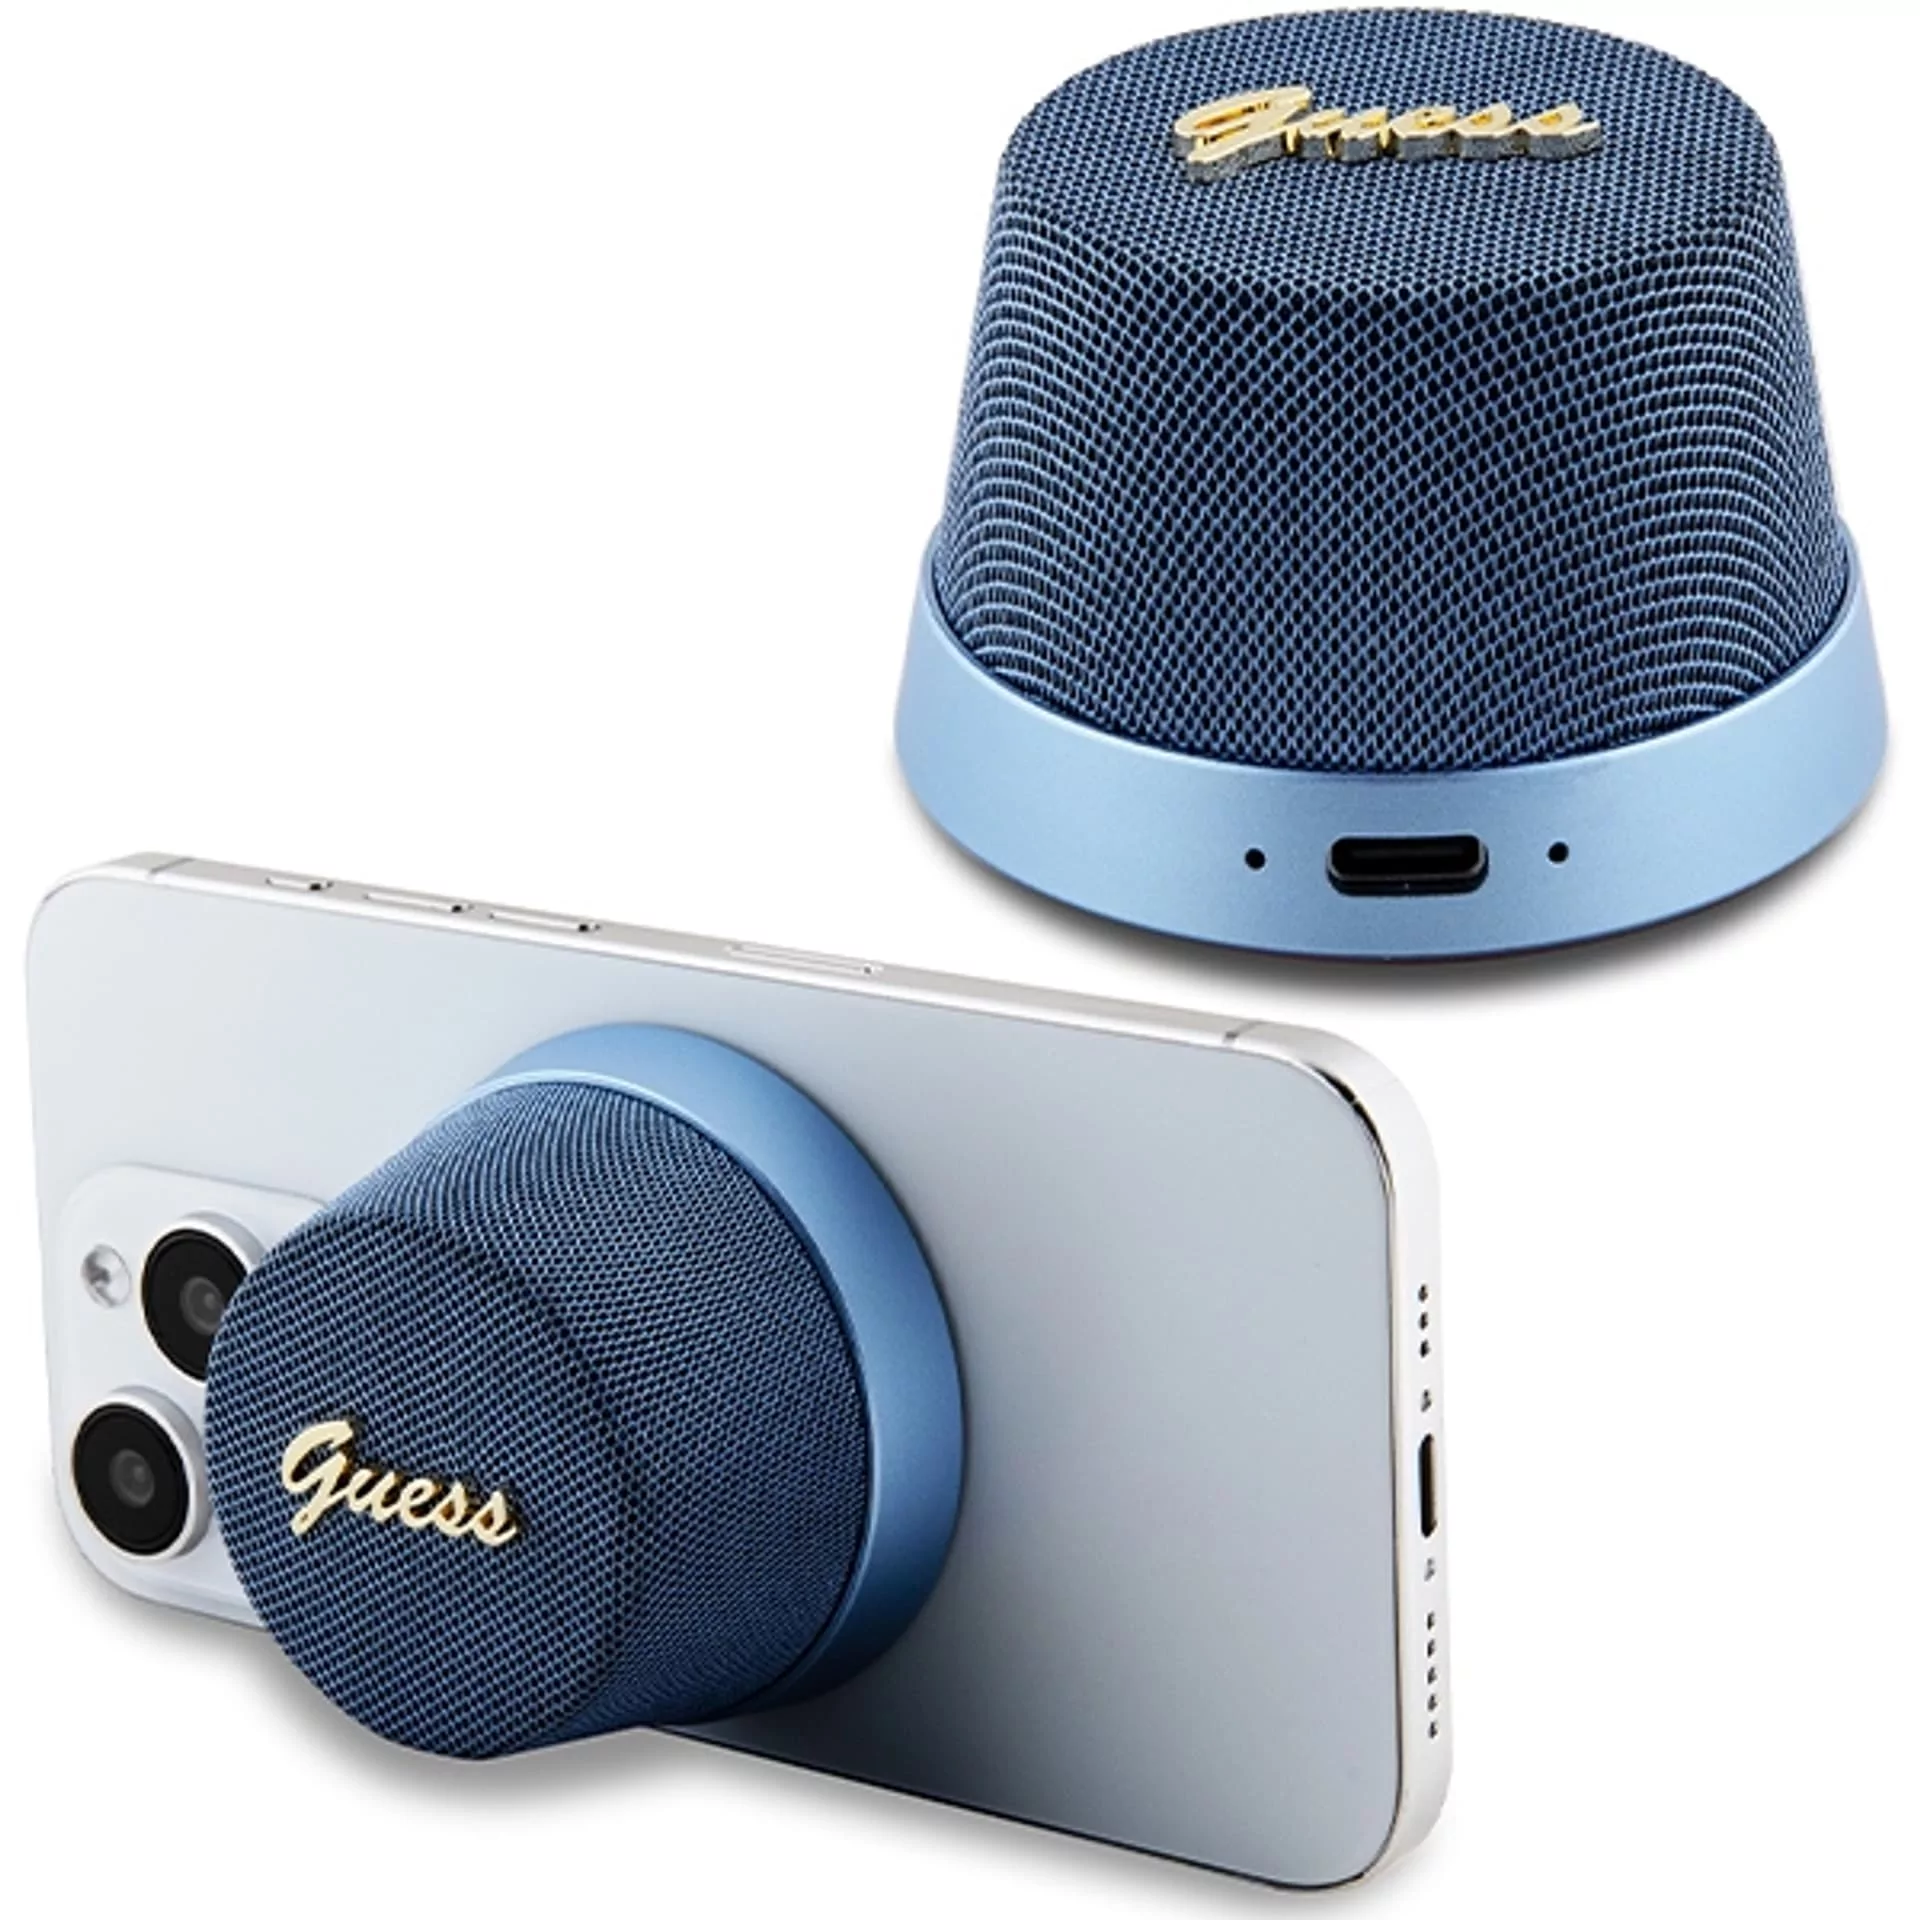 Guess głośnik Bluetooth GUWSC3ALSMB Speaker Stand niebieski/blue Magnetic Script Metal